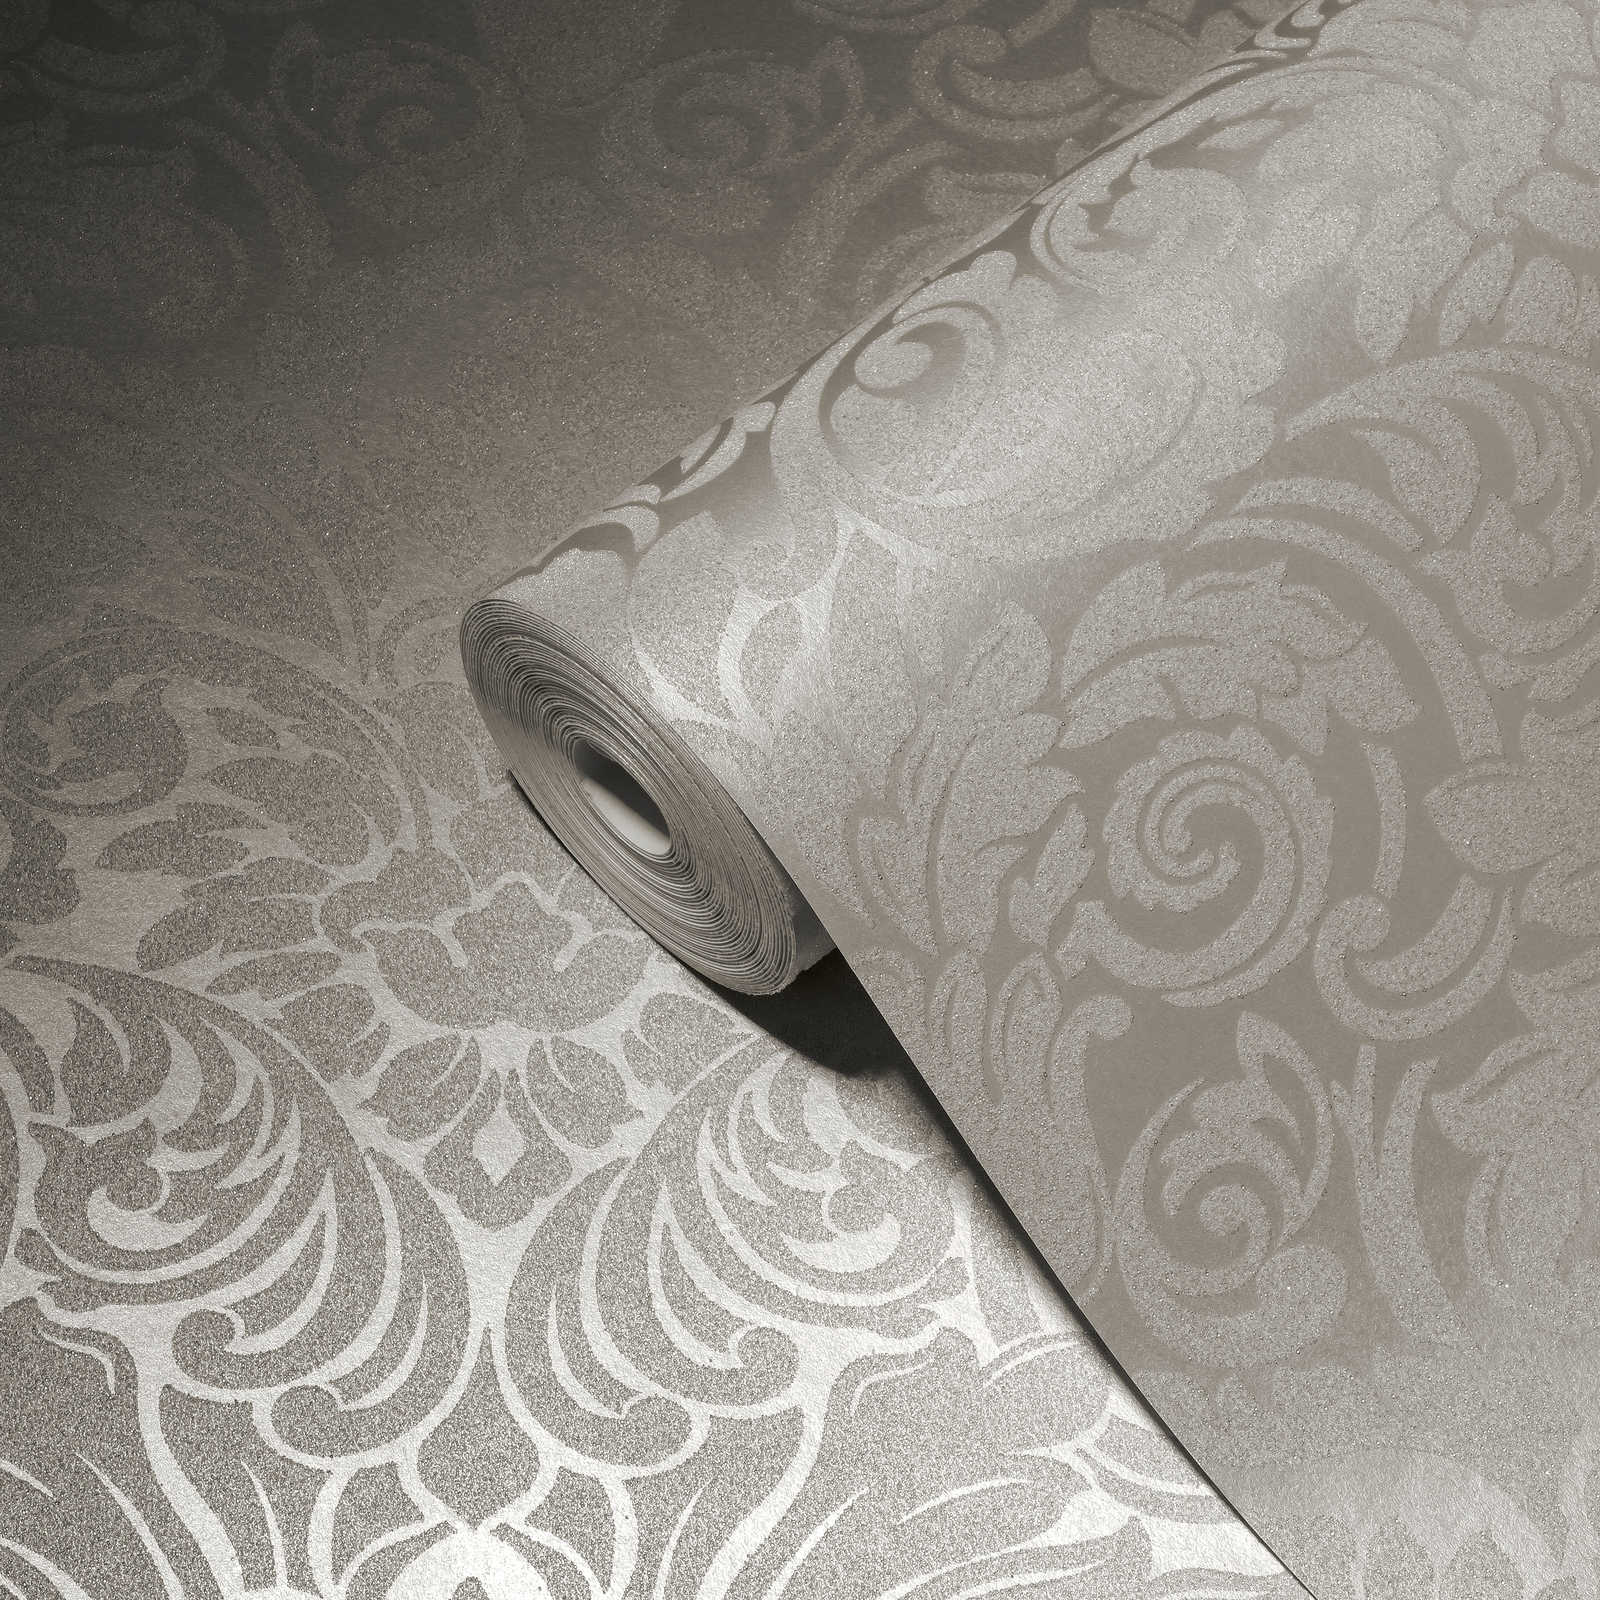             Ornamenttapete mit Metallic-Effekt und floralem Design – Silber, Creme
        